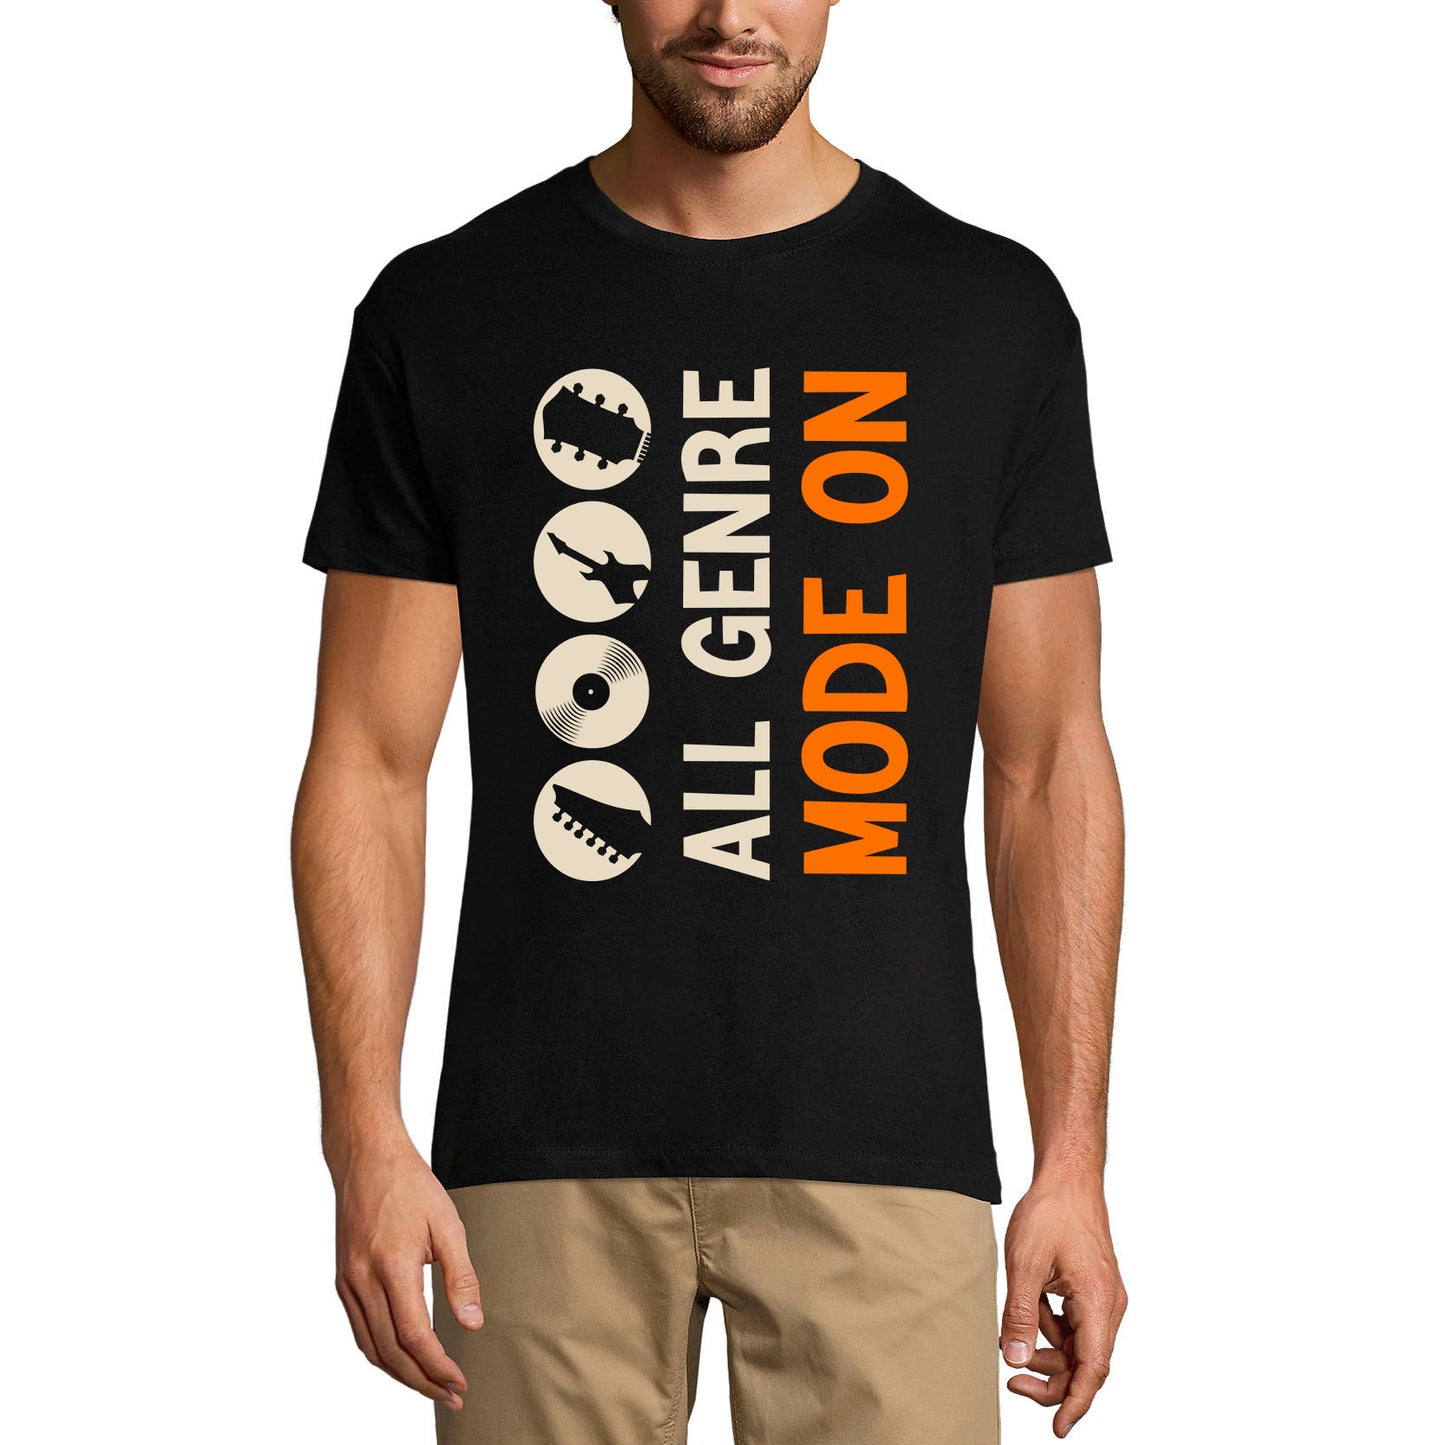 ULTRABASIC Men's T-Shirt All Genre Music Mode On - Funny Shirt for Musician